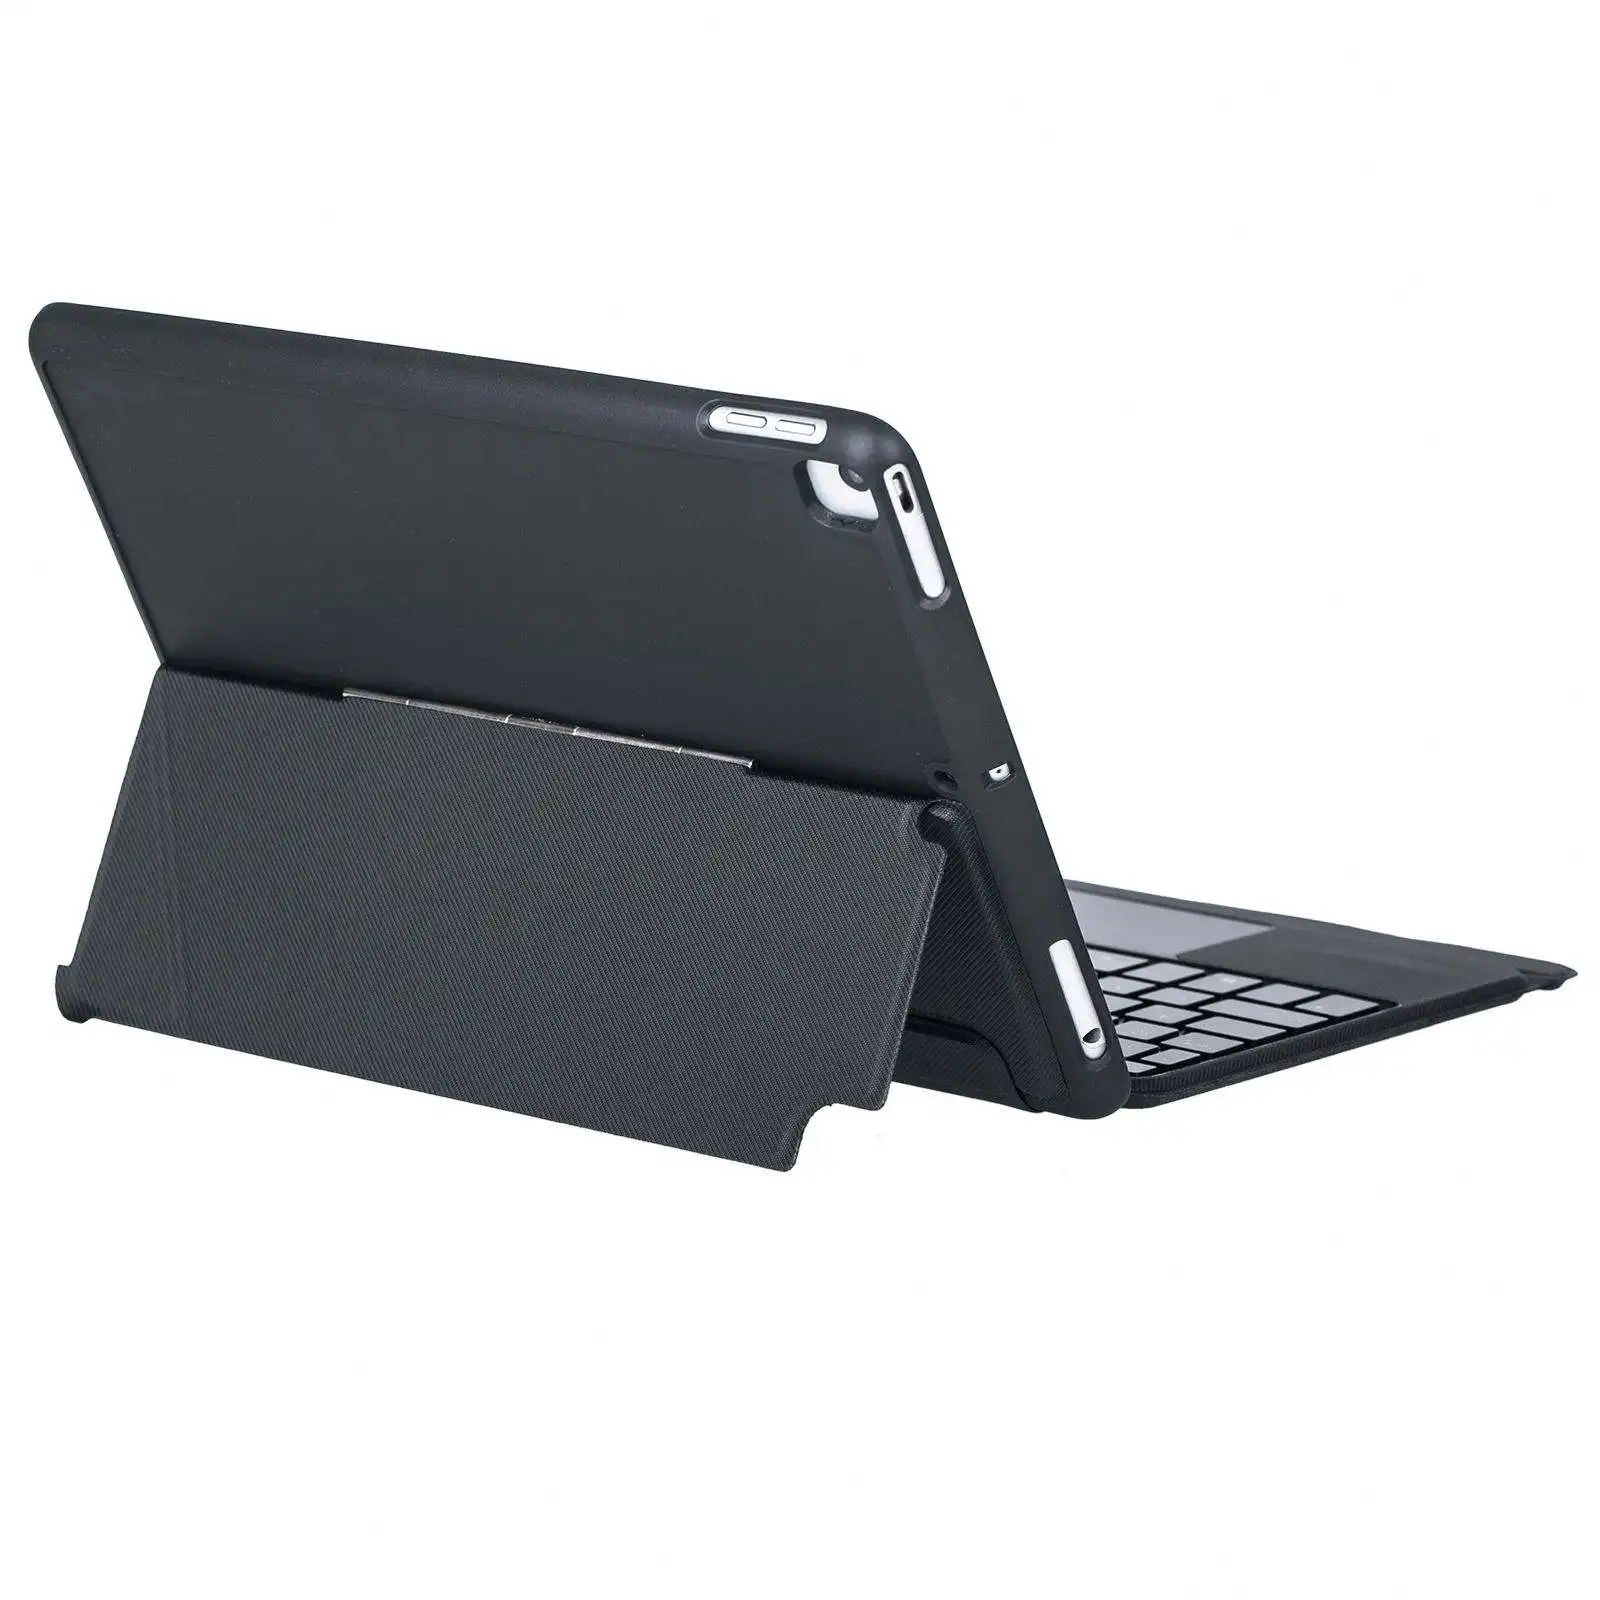 Keyboard Trackpad Backlit BT Nirkabel untuk iPad dengan Casing Berdiri Kompatibel dengan Ponsel Tablet Windows IOS Android